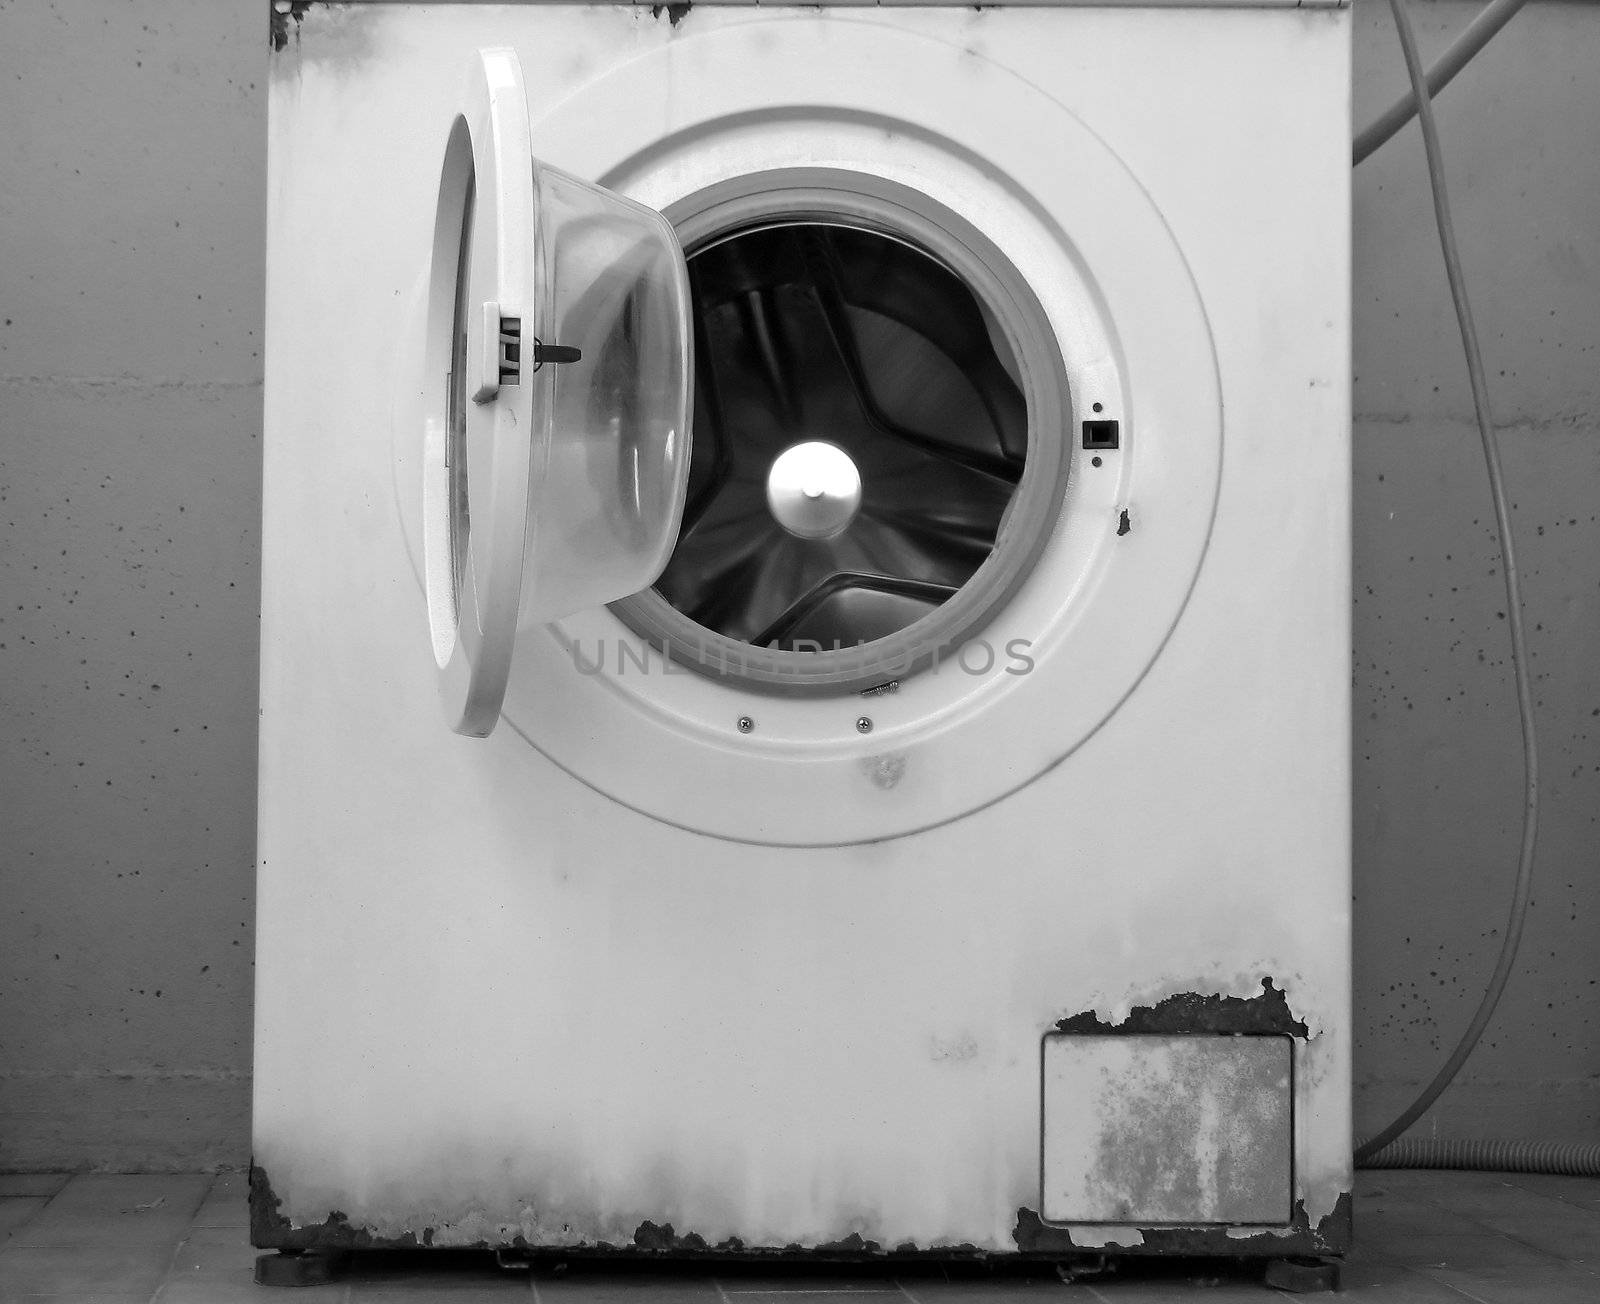 time to change your washing machine: an old rusty washing machine (B&W version)